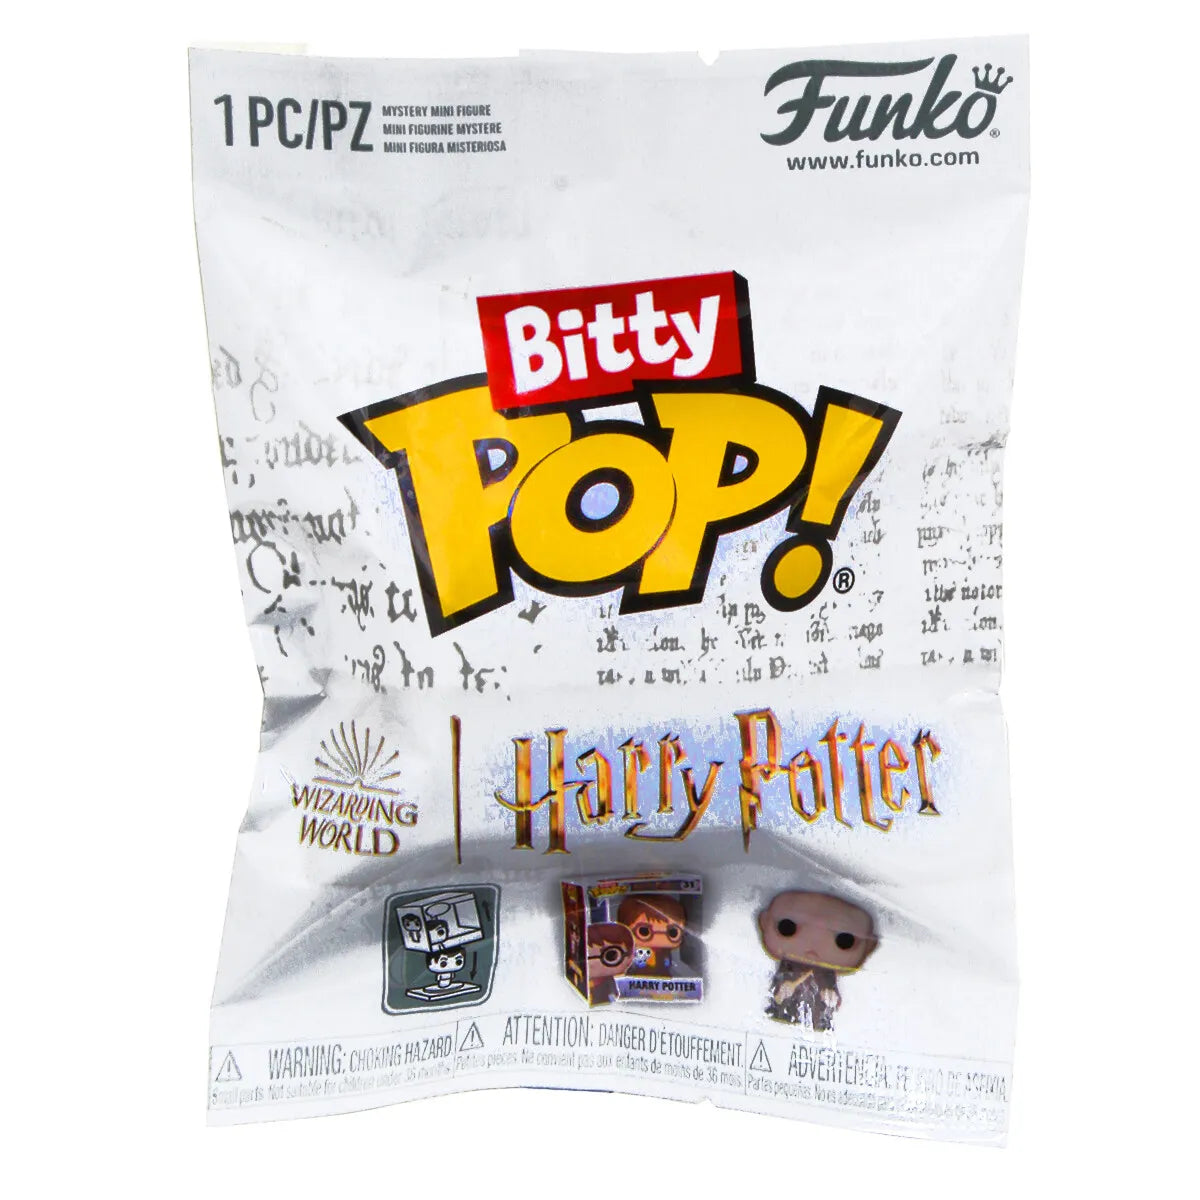 MYSTERY BITTY POP! HARRY POTTER (Single Unit)